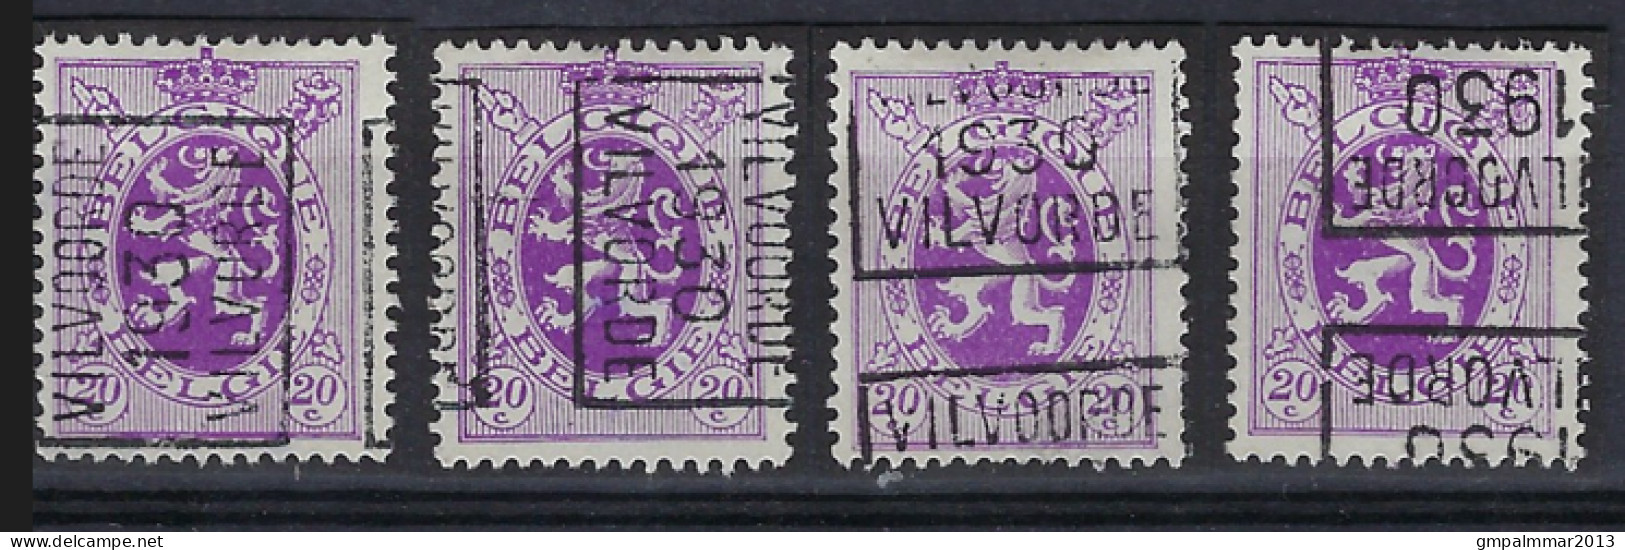 Zegel Nr. 281 Voorafgestempeld Nr. 5911 A + B + C + D VILVOORDE 1930 VILVORDE ; Staat Zie Scan ! - Rollenmarken 1930-..